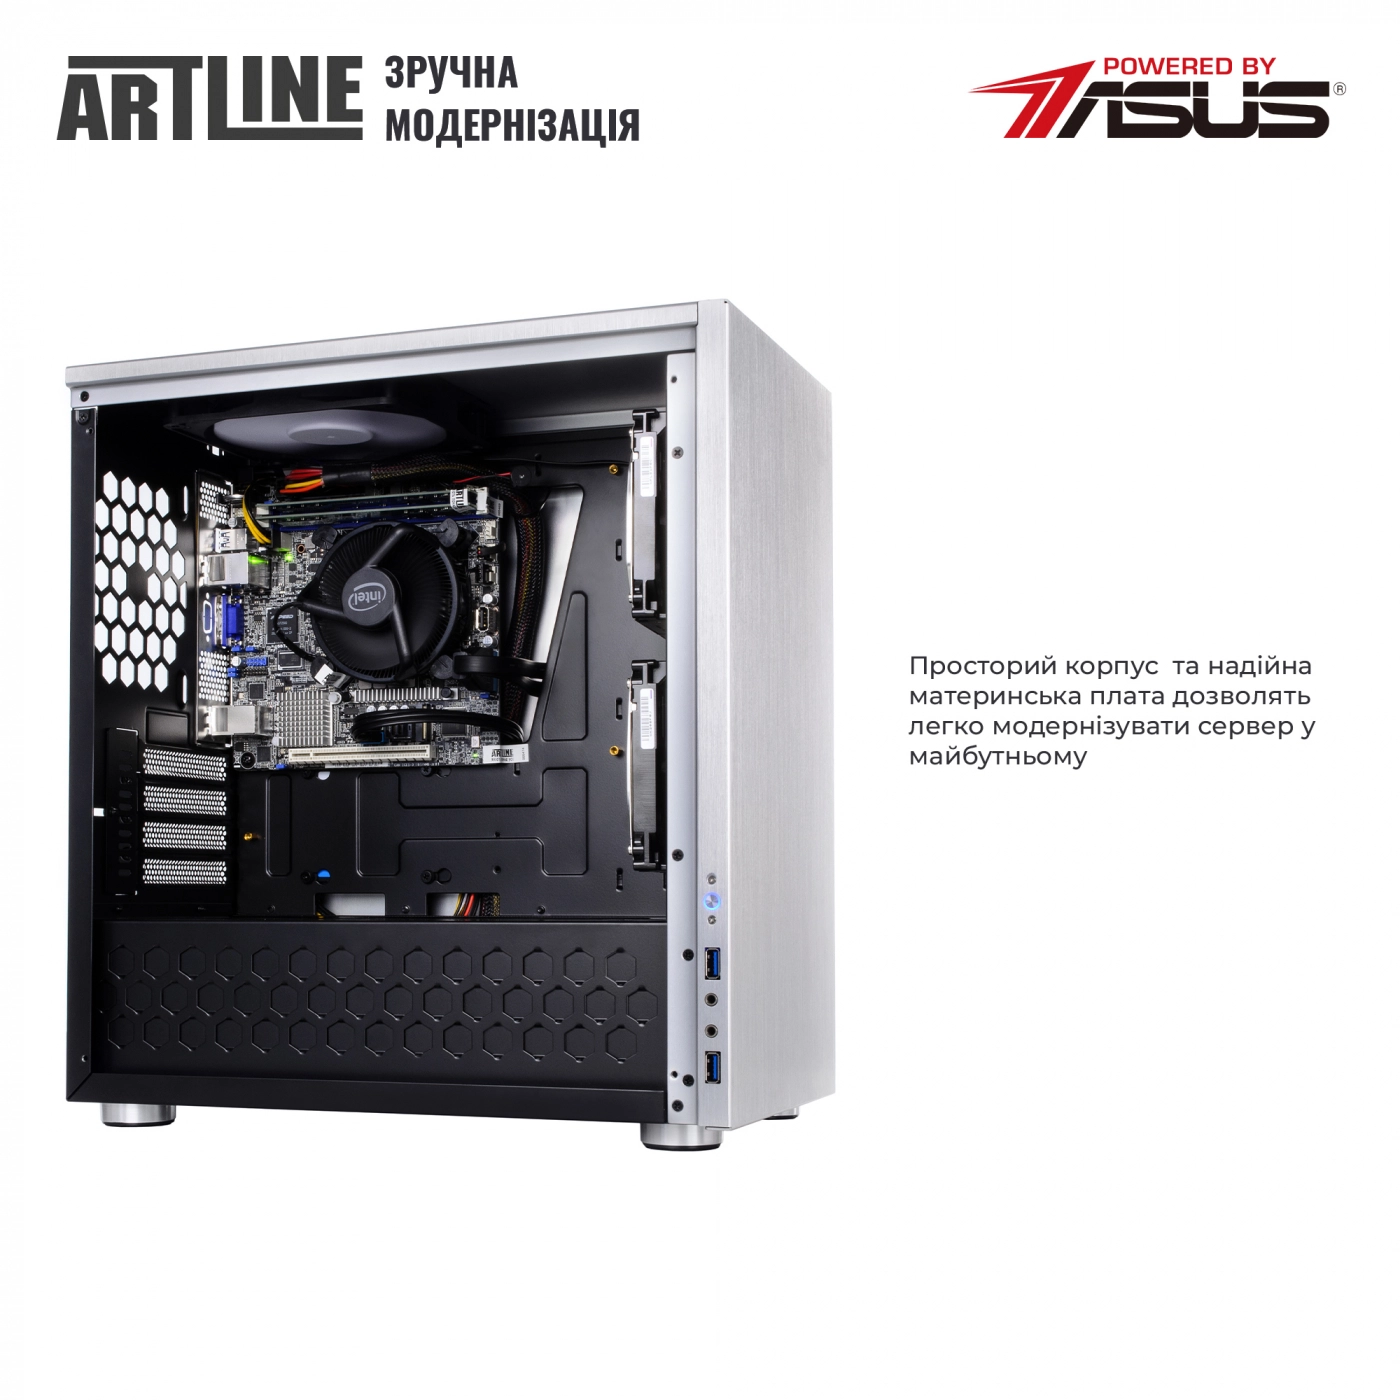 Купить Сервер ARTLINE Business T21v01 - фото 8